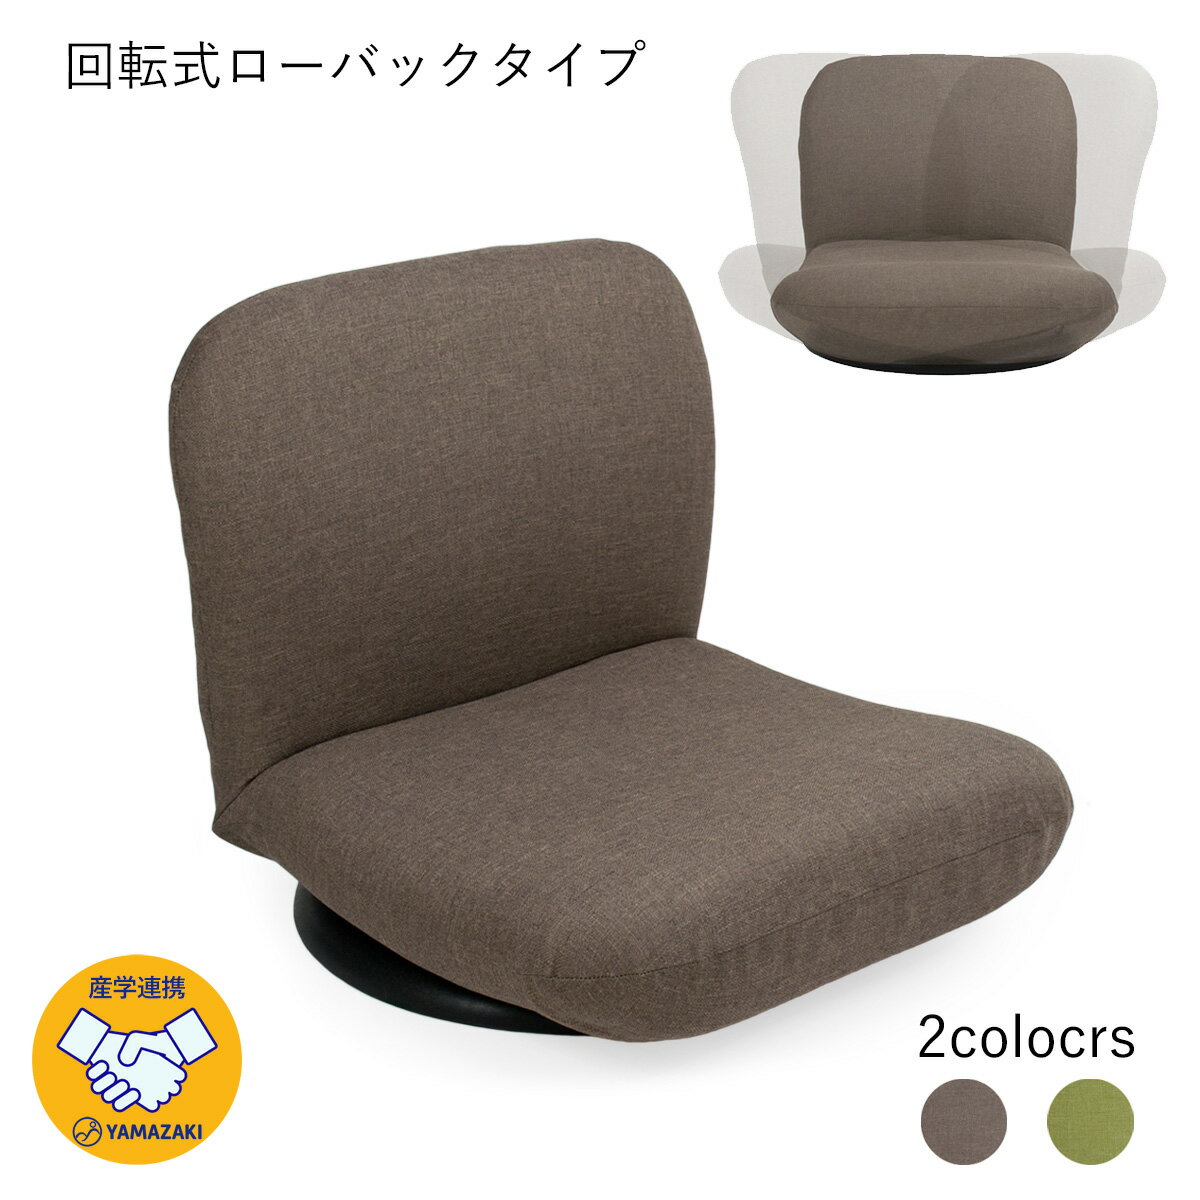 産学連携 回転式 ローバック座椅子3(ヤマザキ) 【 座椅子 日本製 回転 回転式 リクライニング 座椅子カバー ローバック 姿勢 】